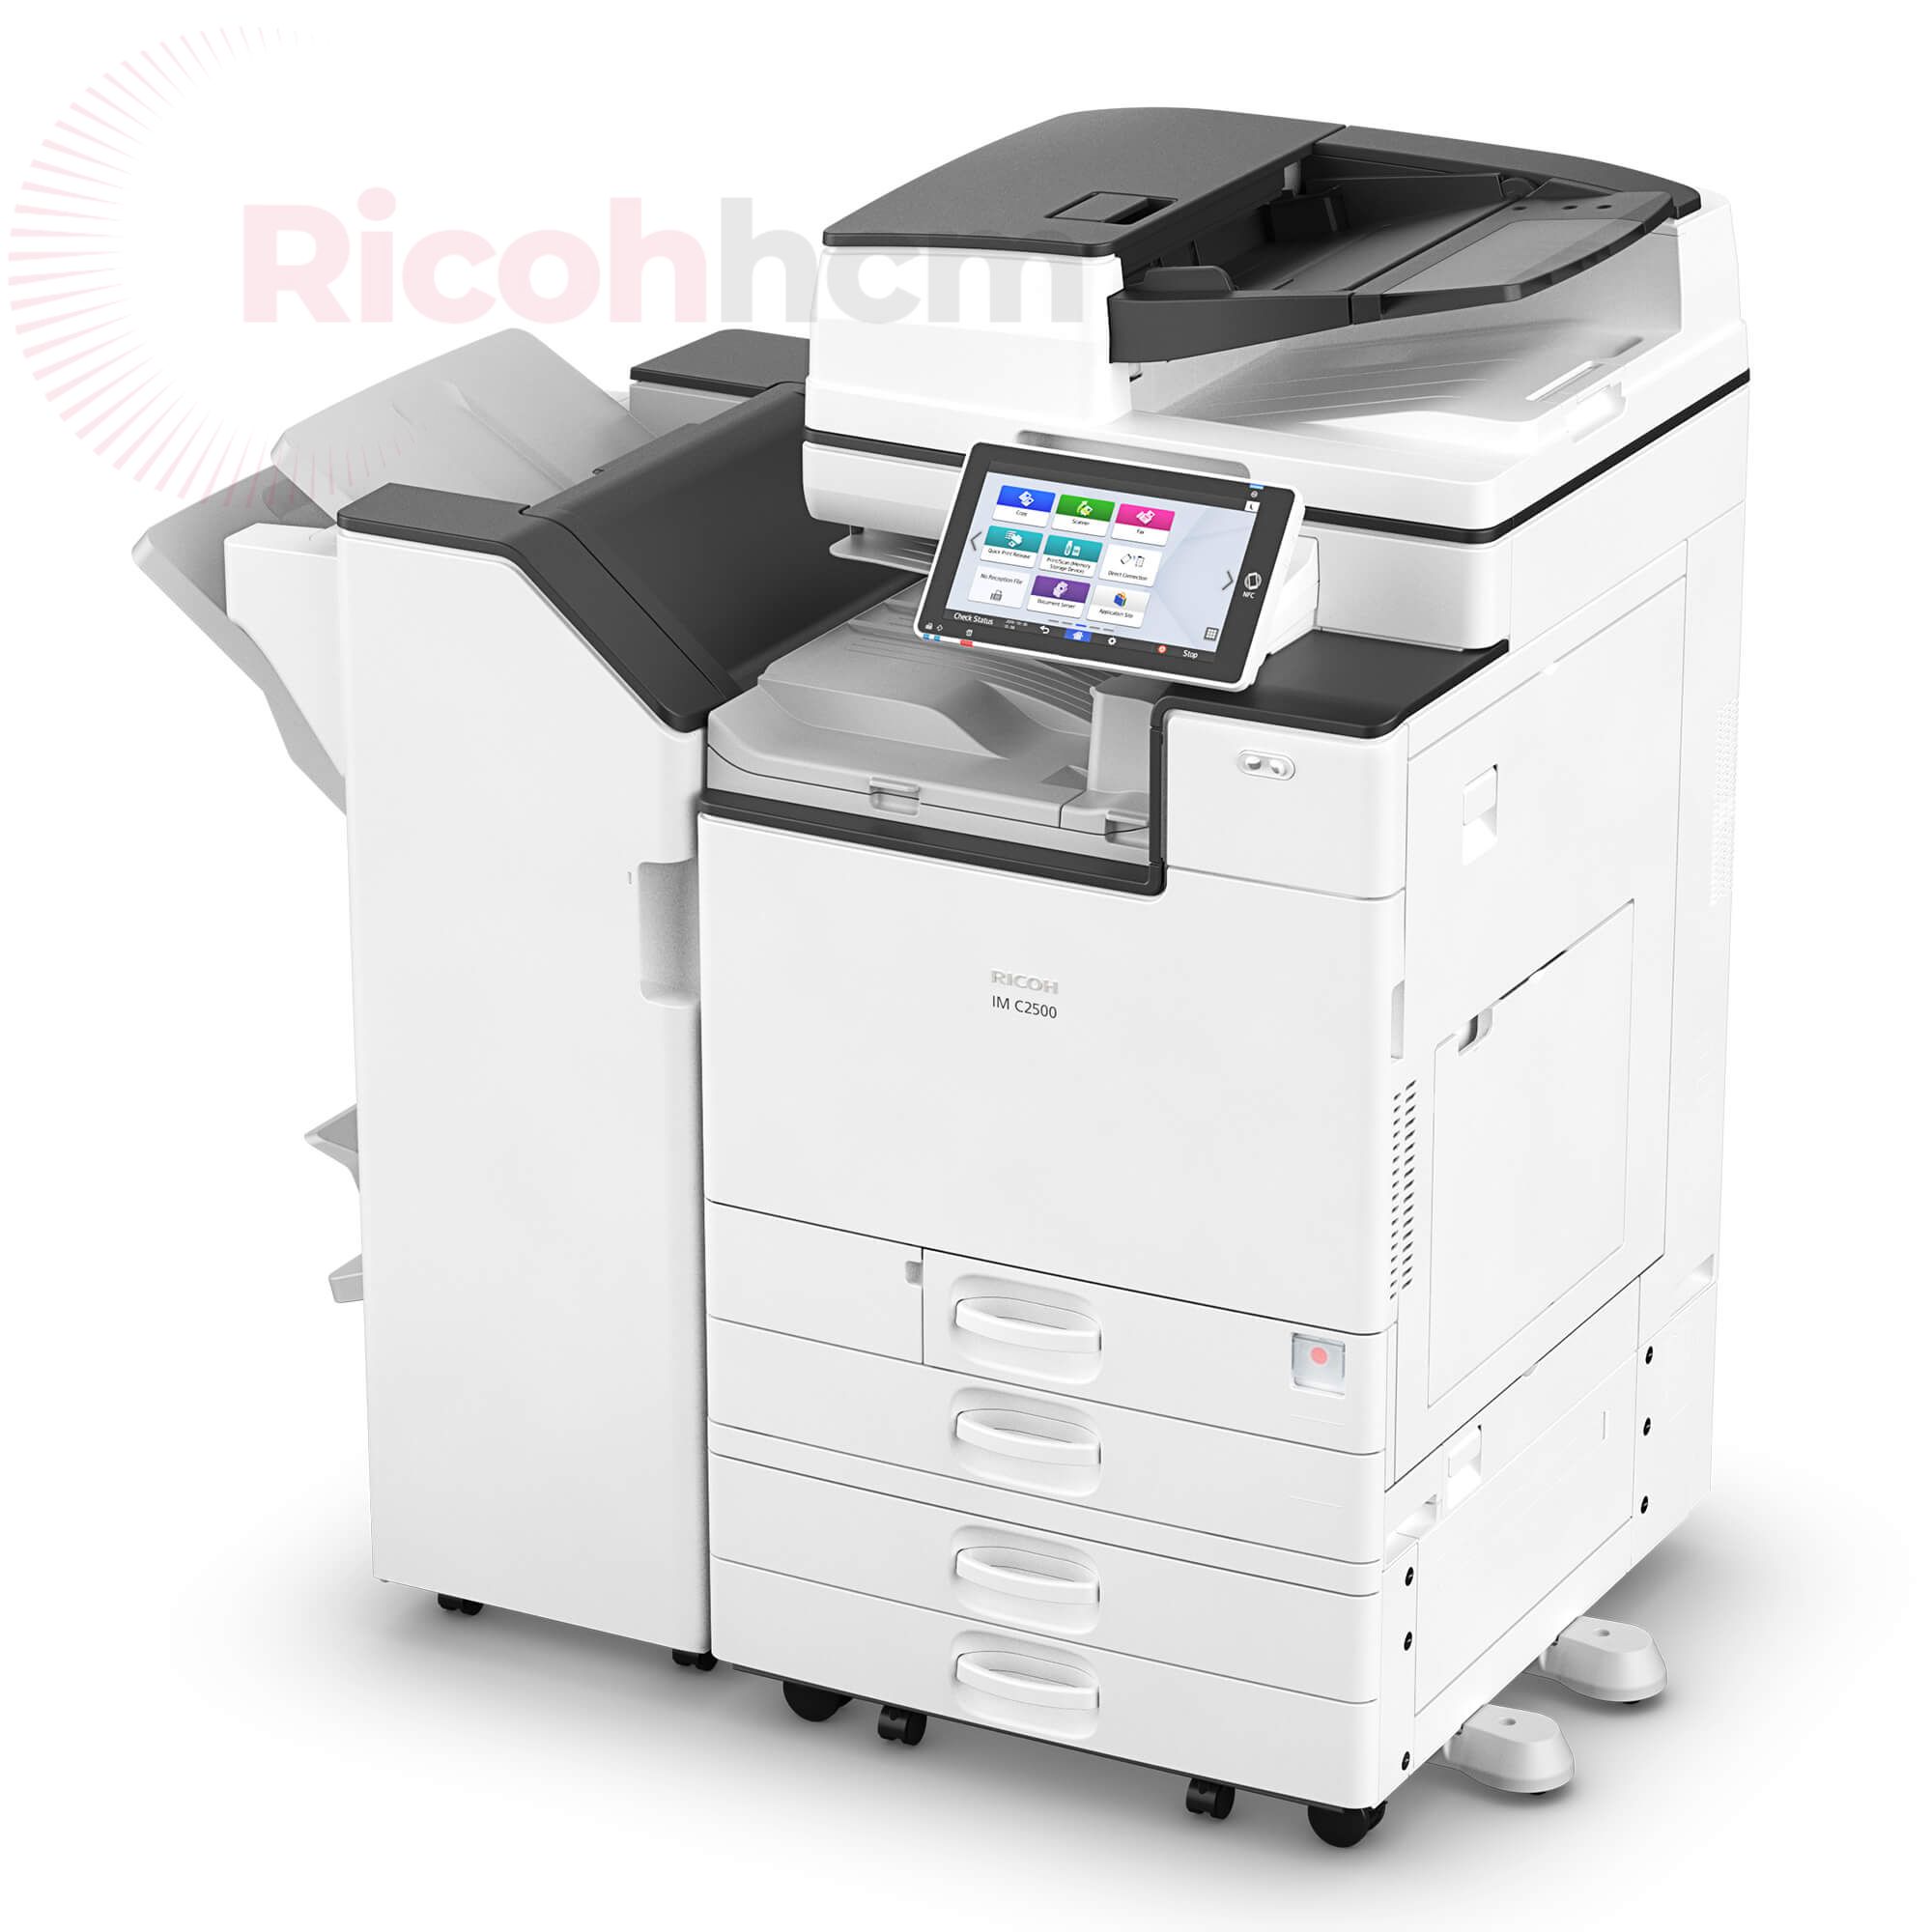 Hiện nay, nhu cầu mua máy photocopy đang tăng nhanh tại Tân Bình nói riêng và cả nước nói chung. Để đáp ứng nhu cầu người dùng, rất nhiều cửa hàng bán máy photocopy quận Tân Bình đã ra đời